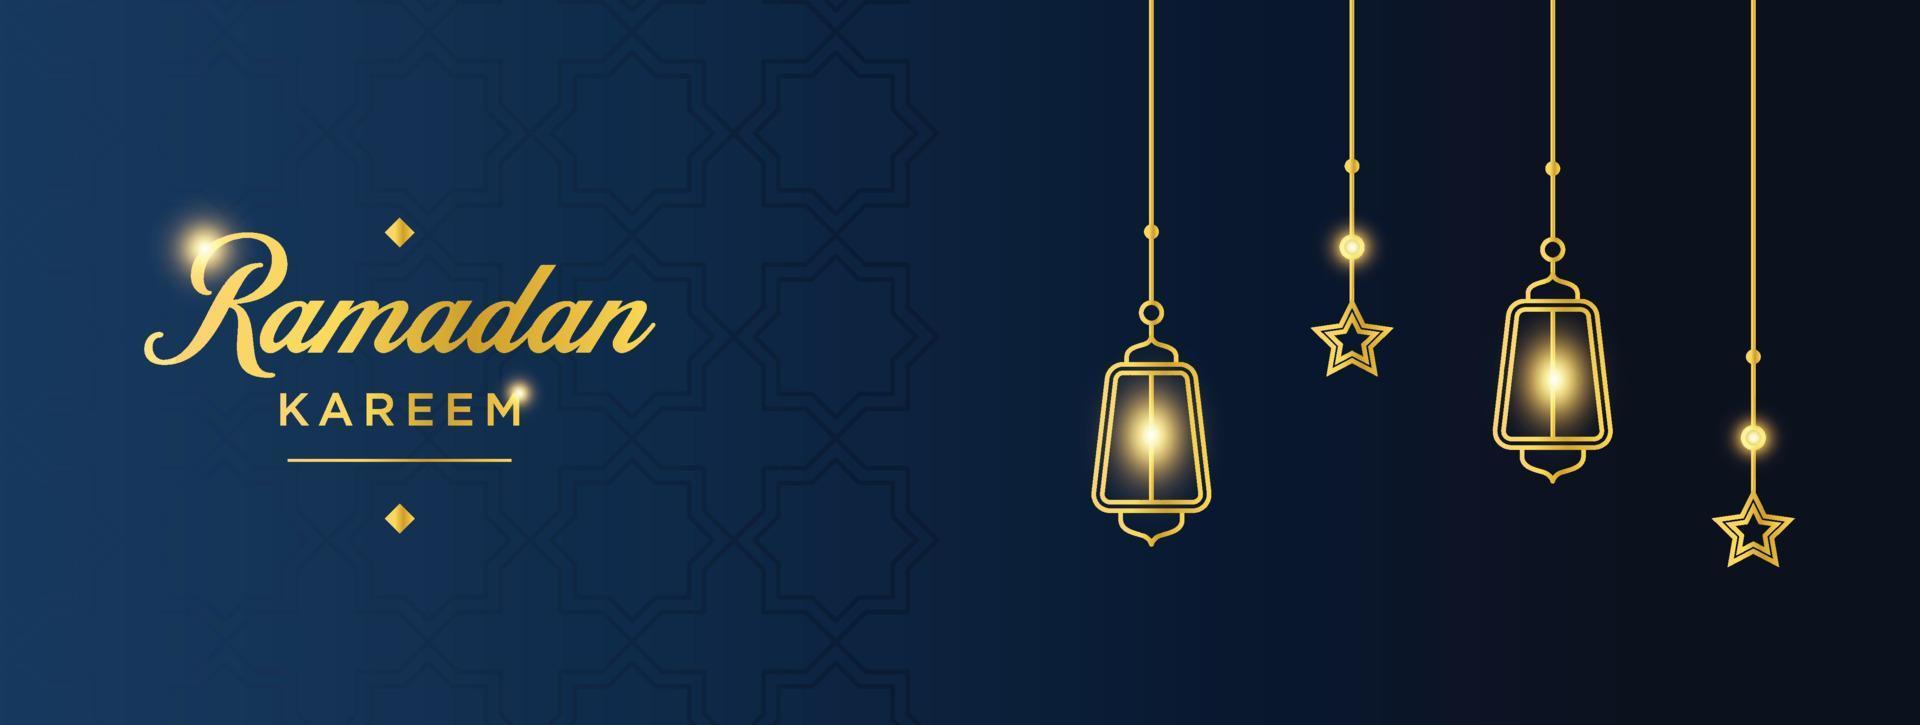 bandera de ramadán kareem. plantilla gráfica de vacaciones islámicas de ramadán con adorno dorado y luz vector